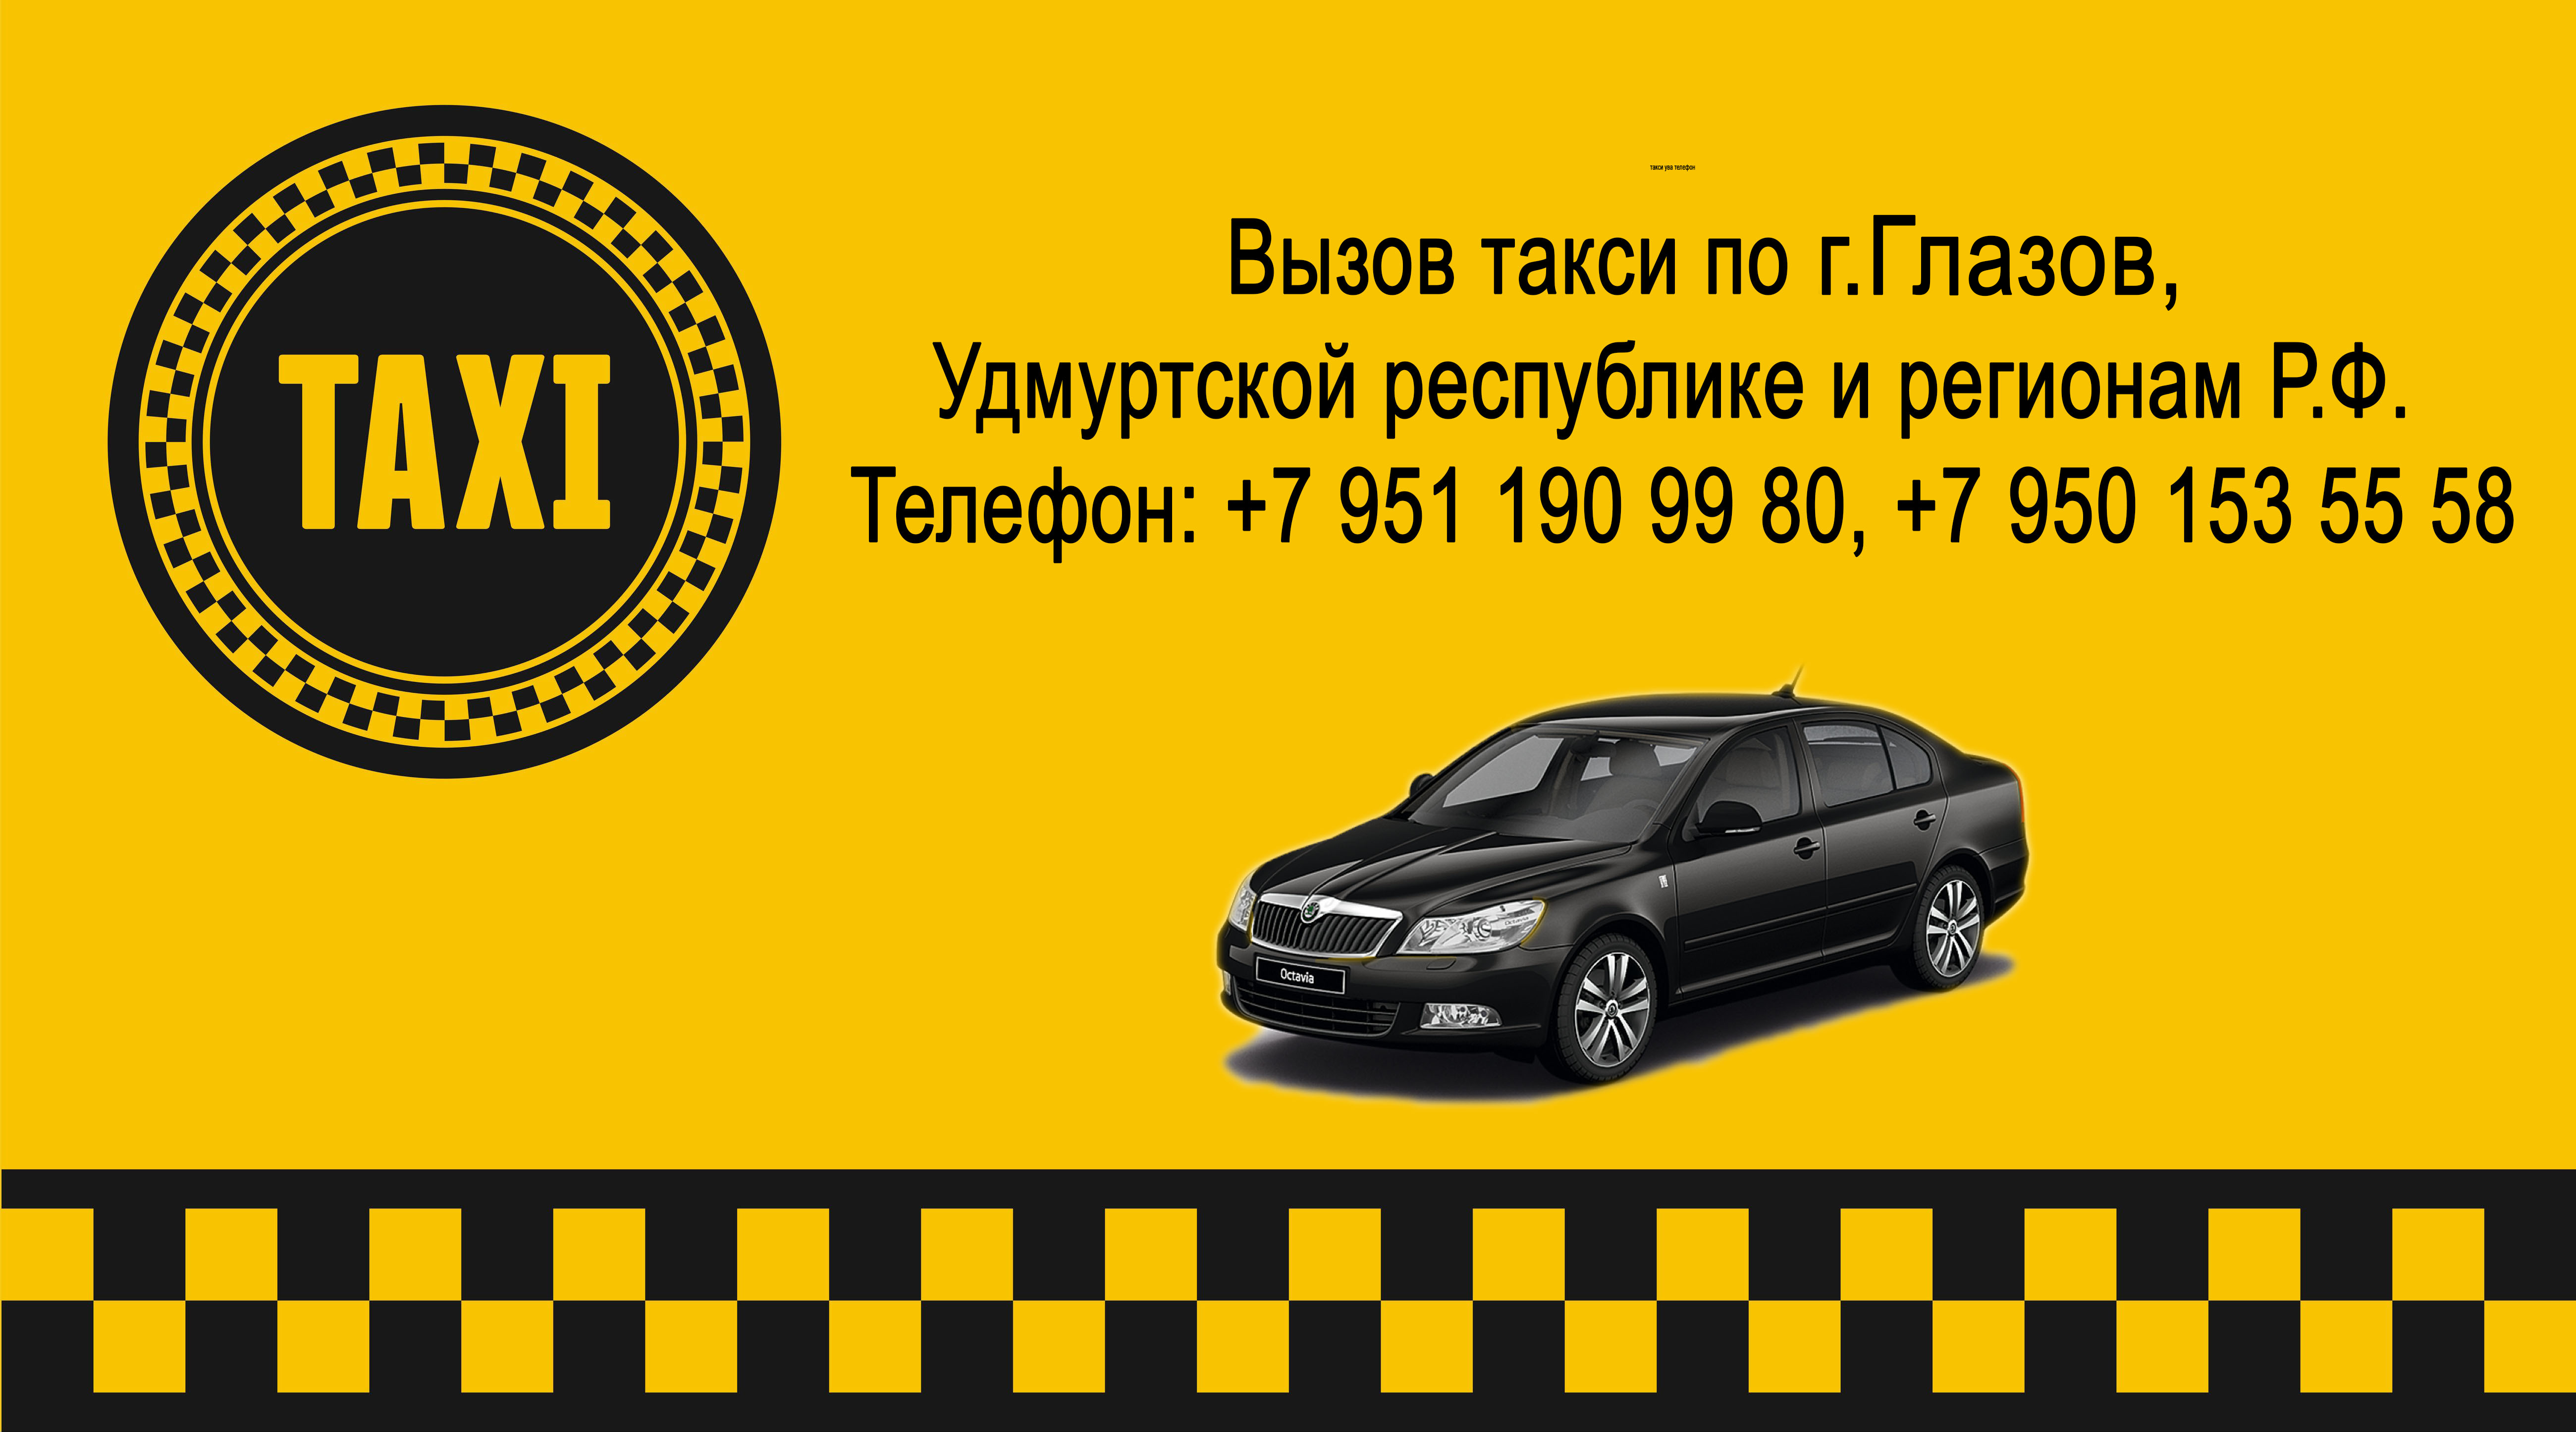 Вызвать такси в рязани. Номер такси. Номера таксистов. Такси Ува. Такси номер такси.